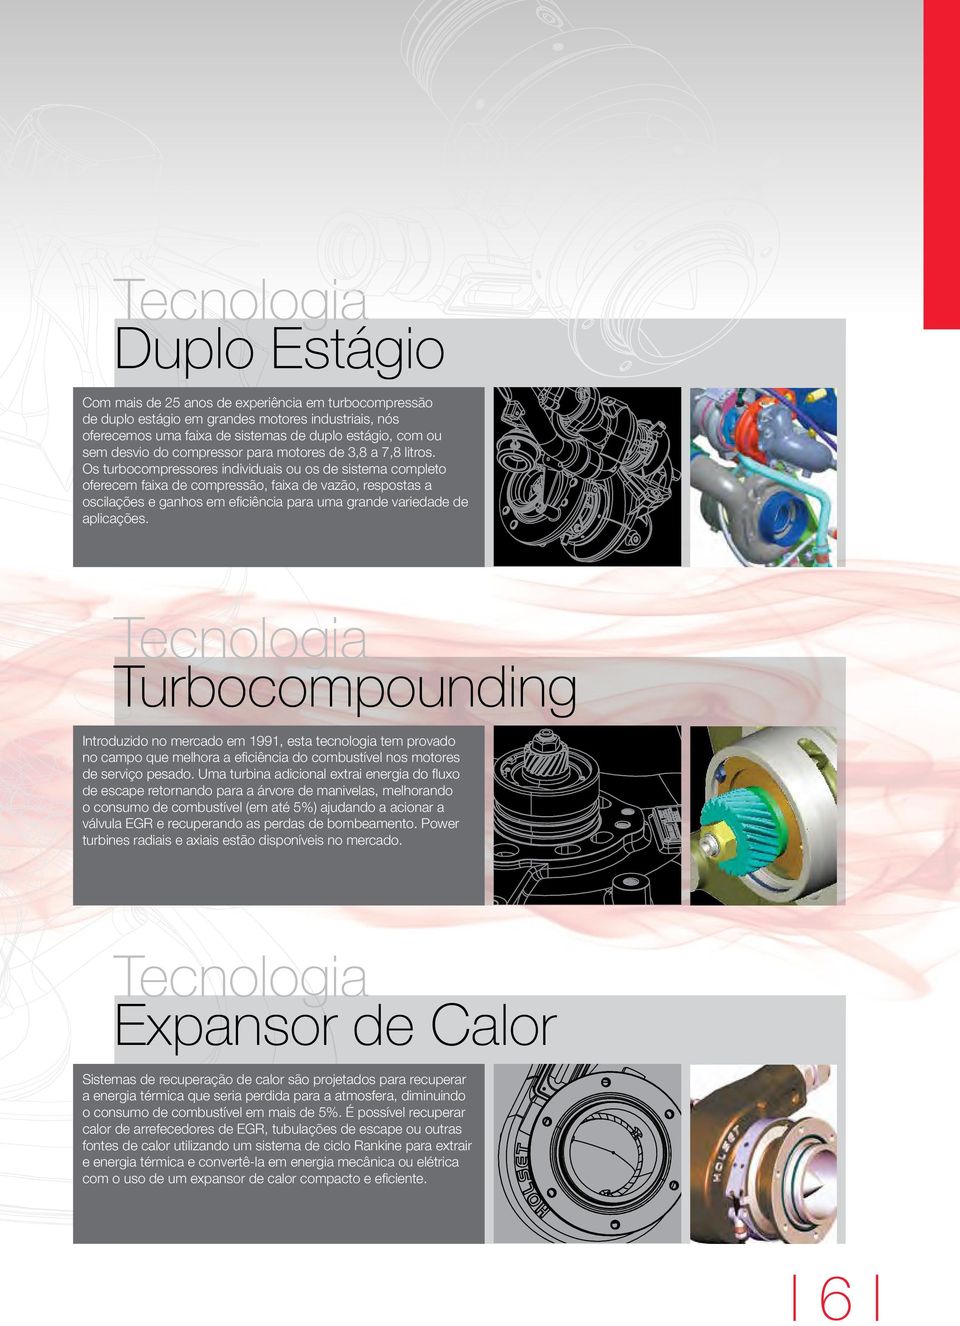 Os turbocompressores individuais ou os de sistema completo oferecem faixa de compressão, faixa de vazão, respostas a oscilações e ganhos em eficiência para uma grande variedade de aplicações.